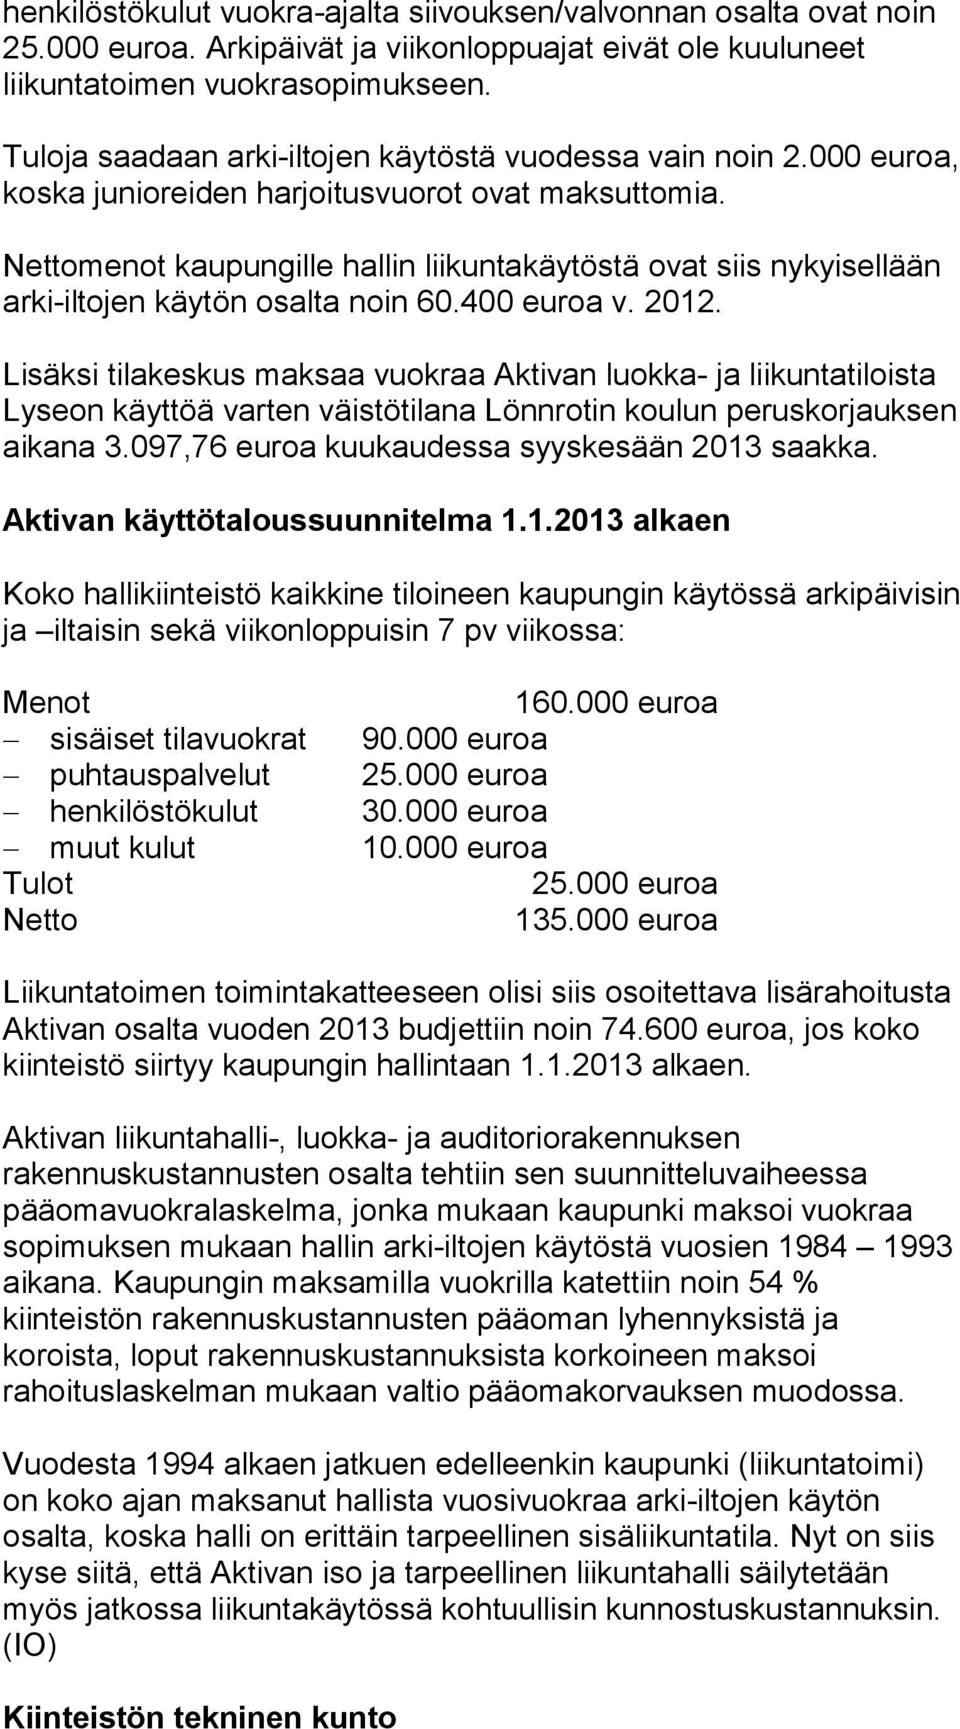 Nettomenot kaupungille hallin liikuntakäytöstä ovat siis nykyisellään arki-iltojen käytön osalta noin 60.400 euroa v. 2012.